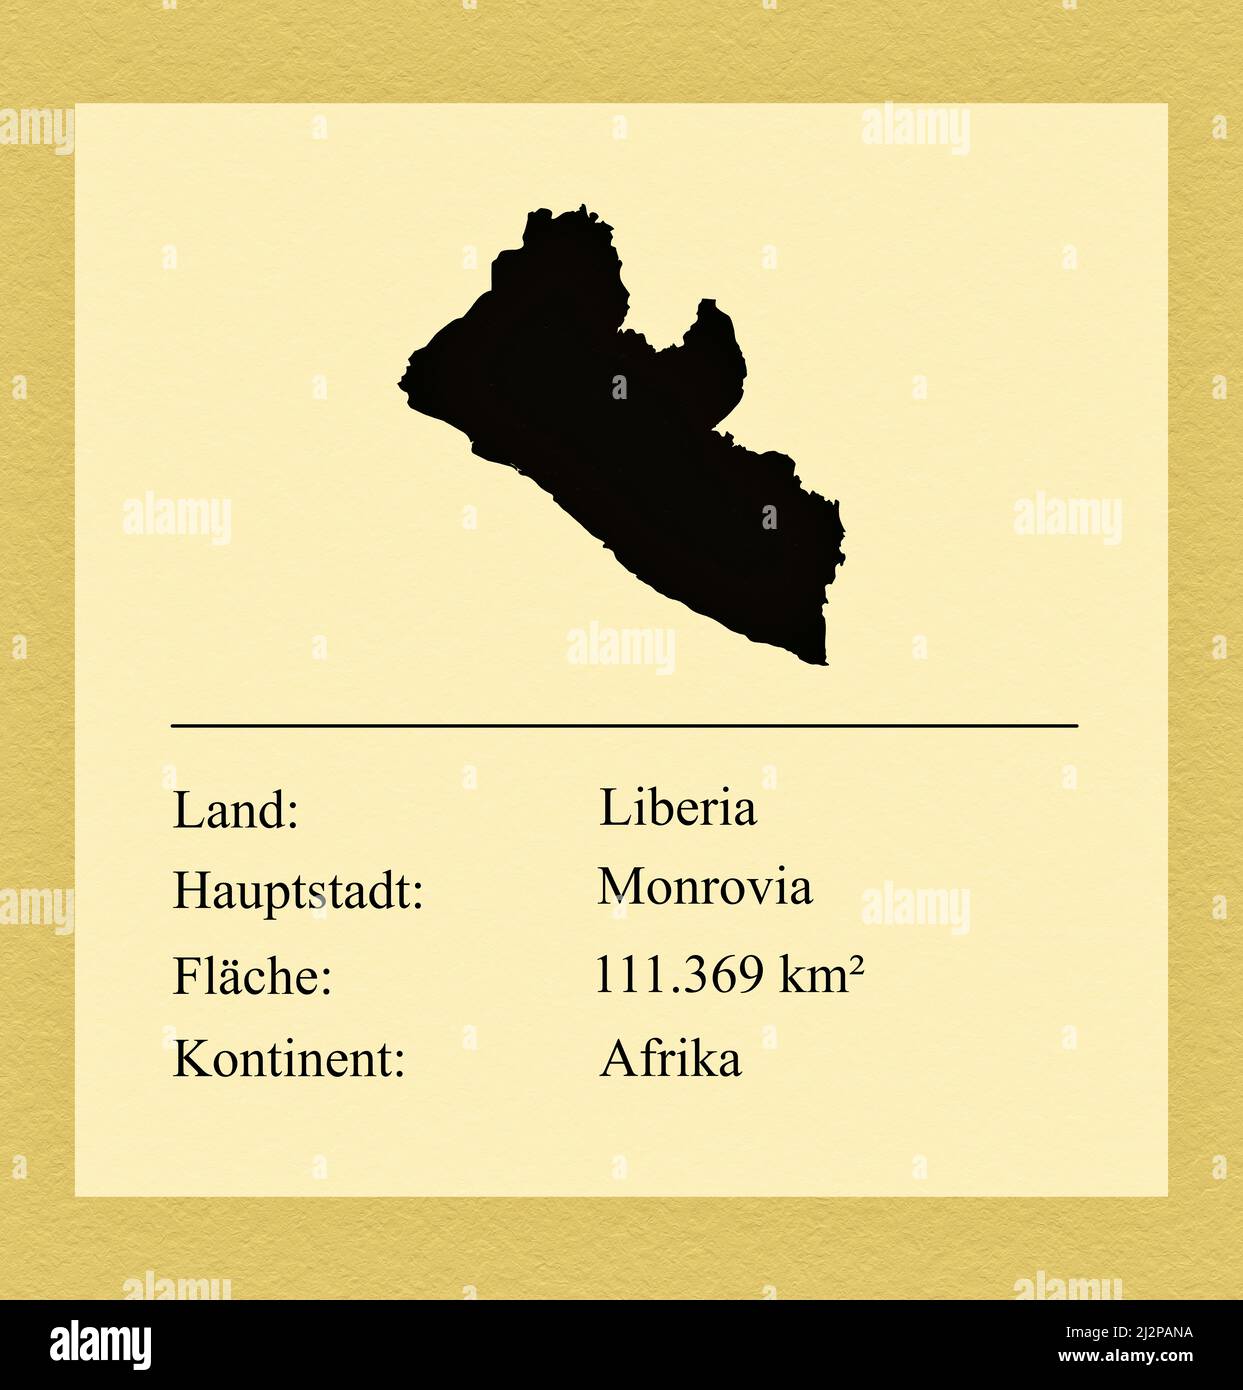 Umrisse des Landes Liberia, darunter ein kleiner Steckbrief mit Ländernamen, Hauptstadt, Fläche und Kontinent Foto Stock